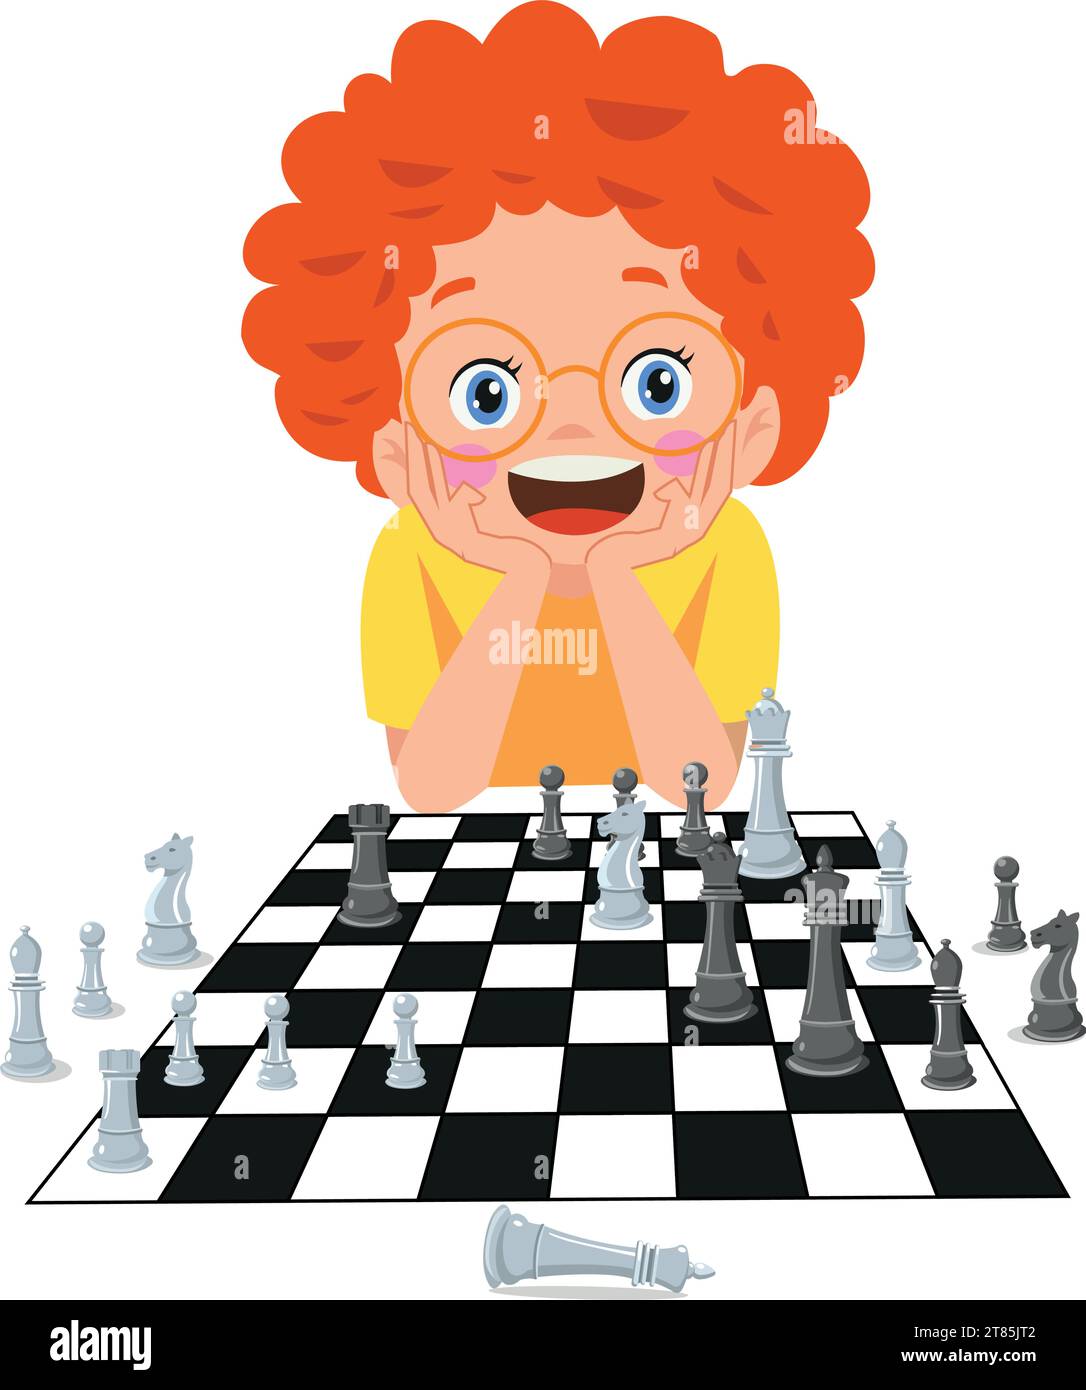 Personnage de dessin animé jouant le jeu d'échecs Illustration de Vecteur